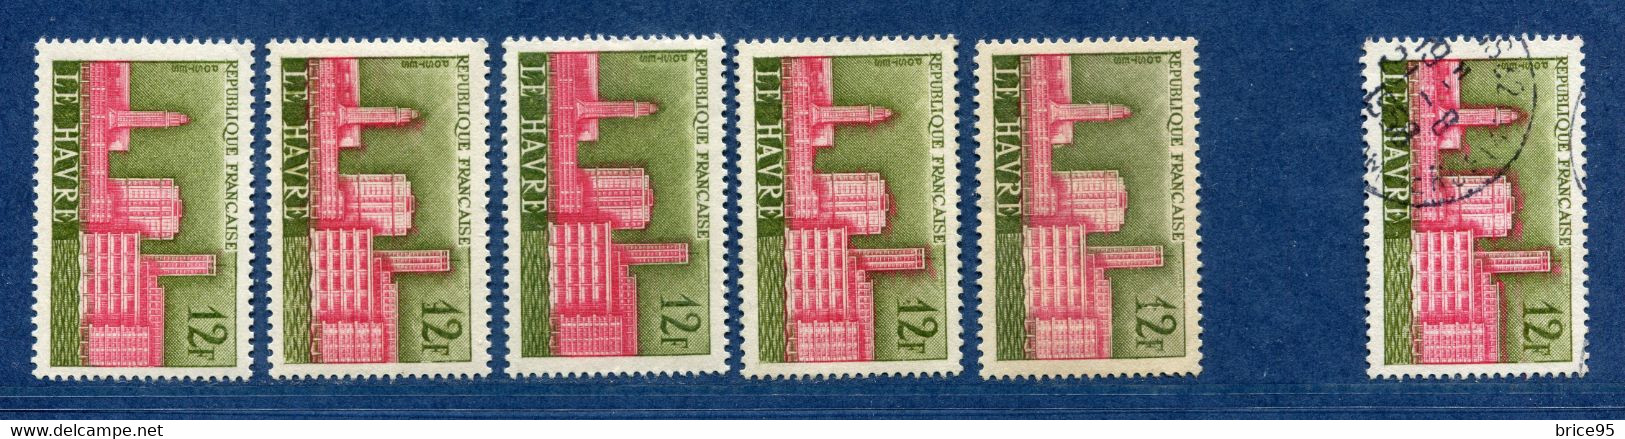 ⭐ France - Variété - YT N° 1152 - Couleurs - Pétouille - Nuage - Neuf Sans Charnière - 1958 ⭐ - Unused Stamps